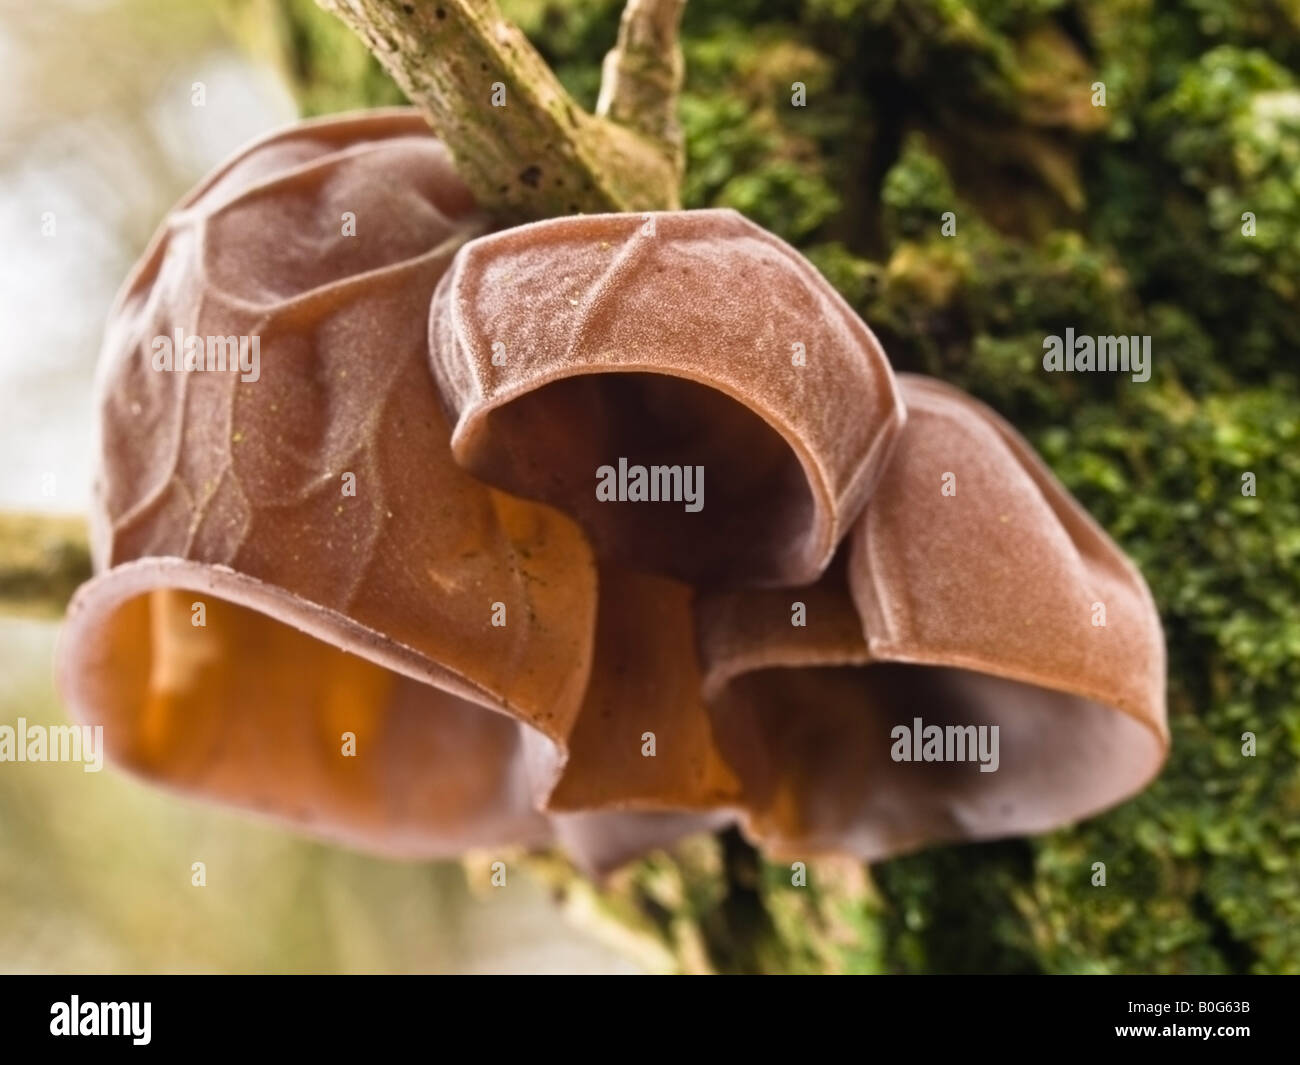 Jelly Ear Fungus Auricularia auricular judae Stock Photo